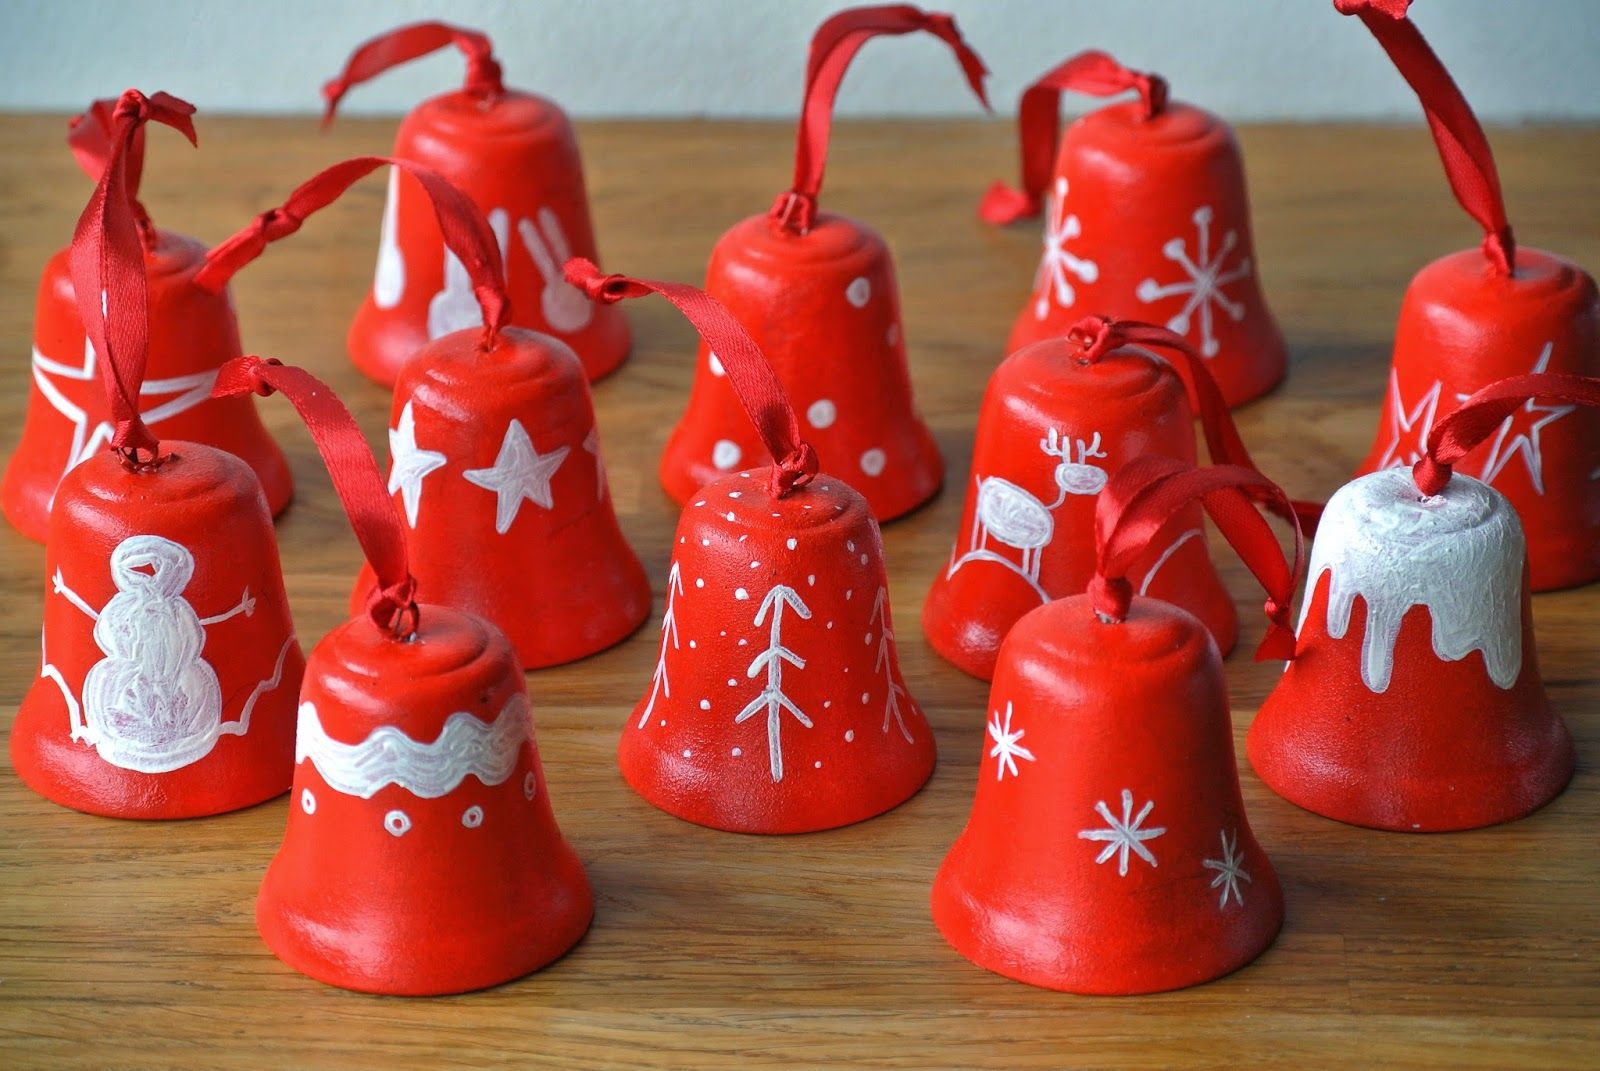 jingle bells ceramic ornaments